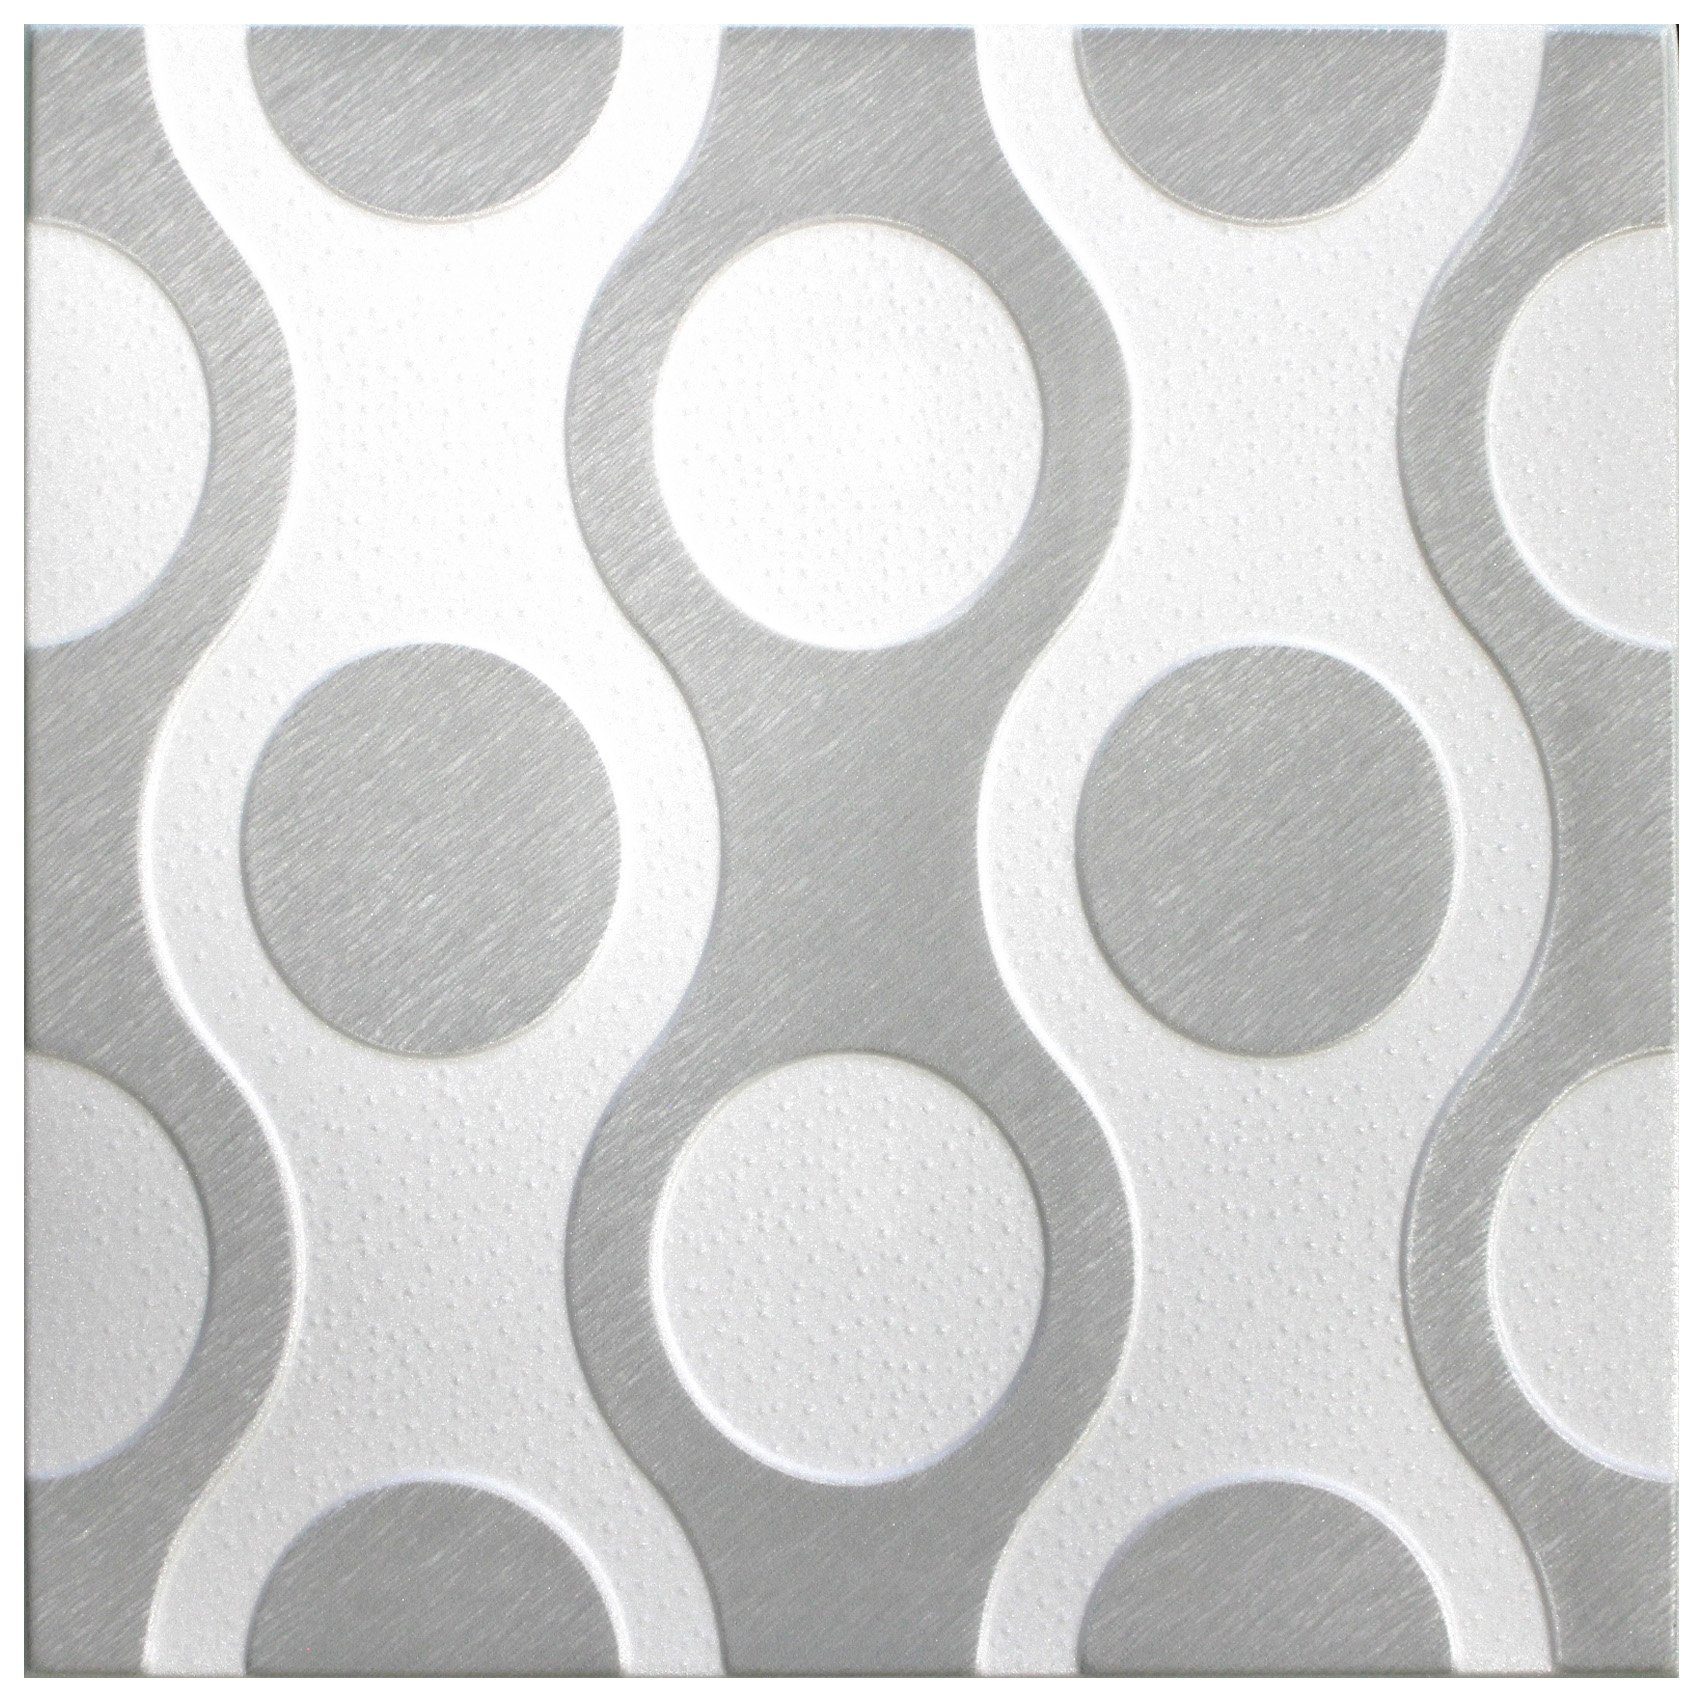 Wand- Deckenverkleidung XPS qm (2 50x50cm Hexim formfest) BS Styropor große Dekor Deckenplatten Nr.98 Auswahl Wanddekoobjekt und - Platten farbige